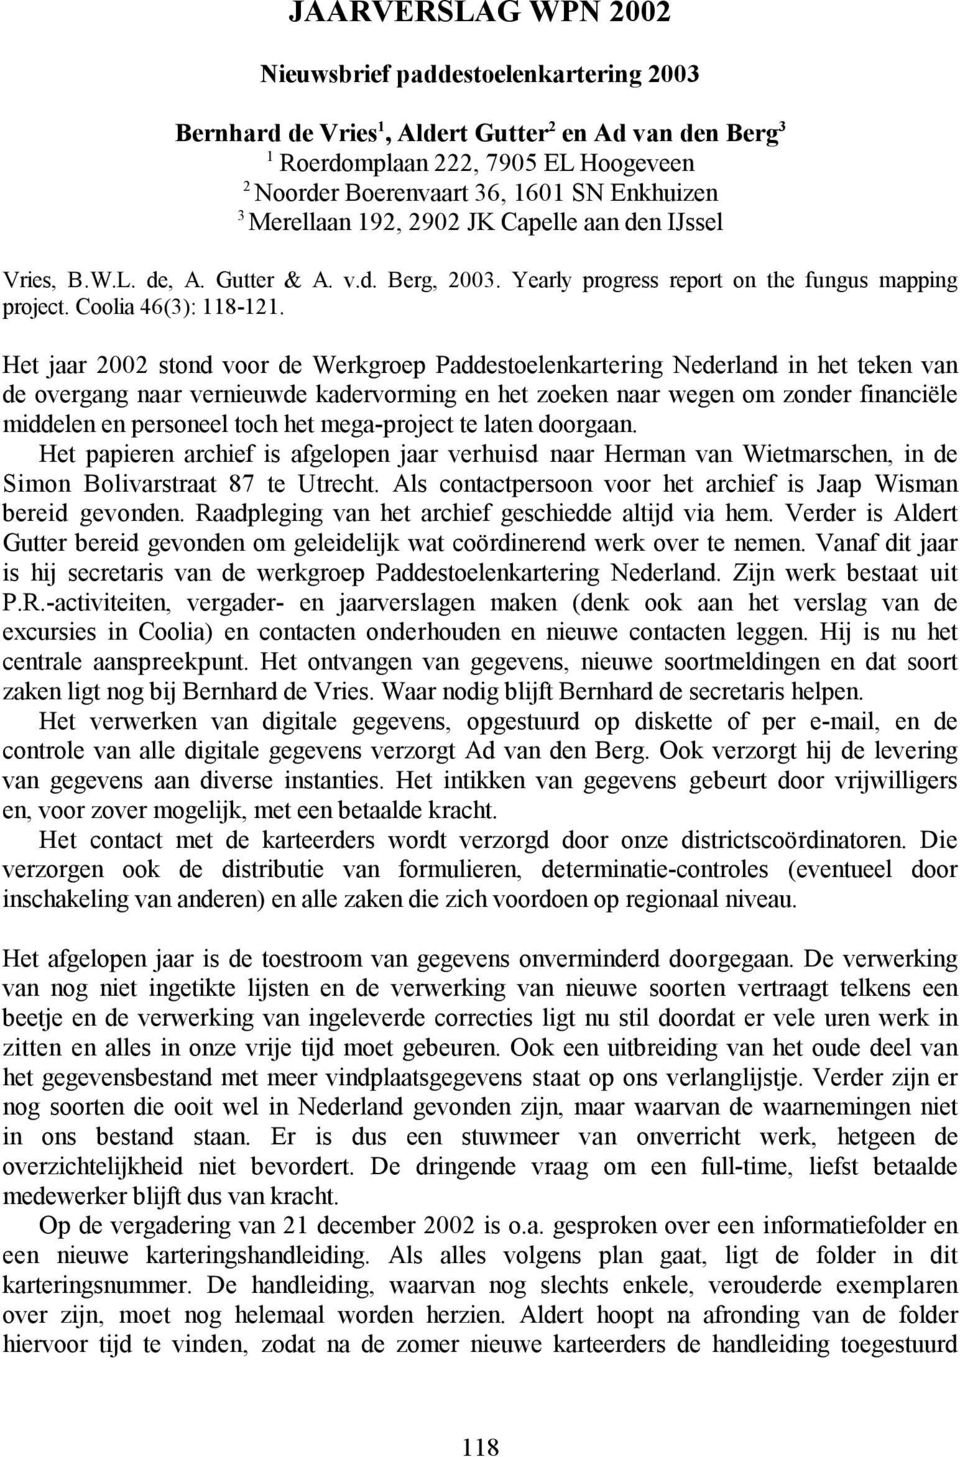 Het jaar 2002 stond voor de Werkgroep Paddestoelenkartering Nederland in het teken van de overgang naar vernieuwde kadervorming en het zoeken naar wegen om zonder financiële middelen en personeel